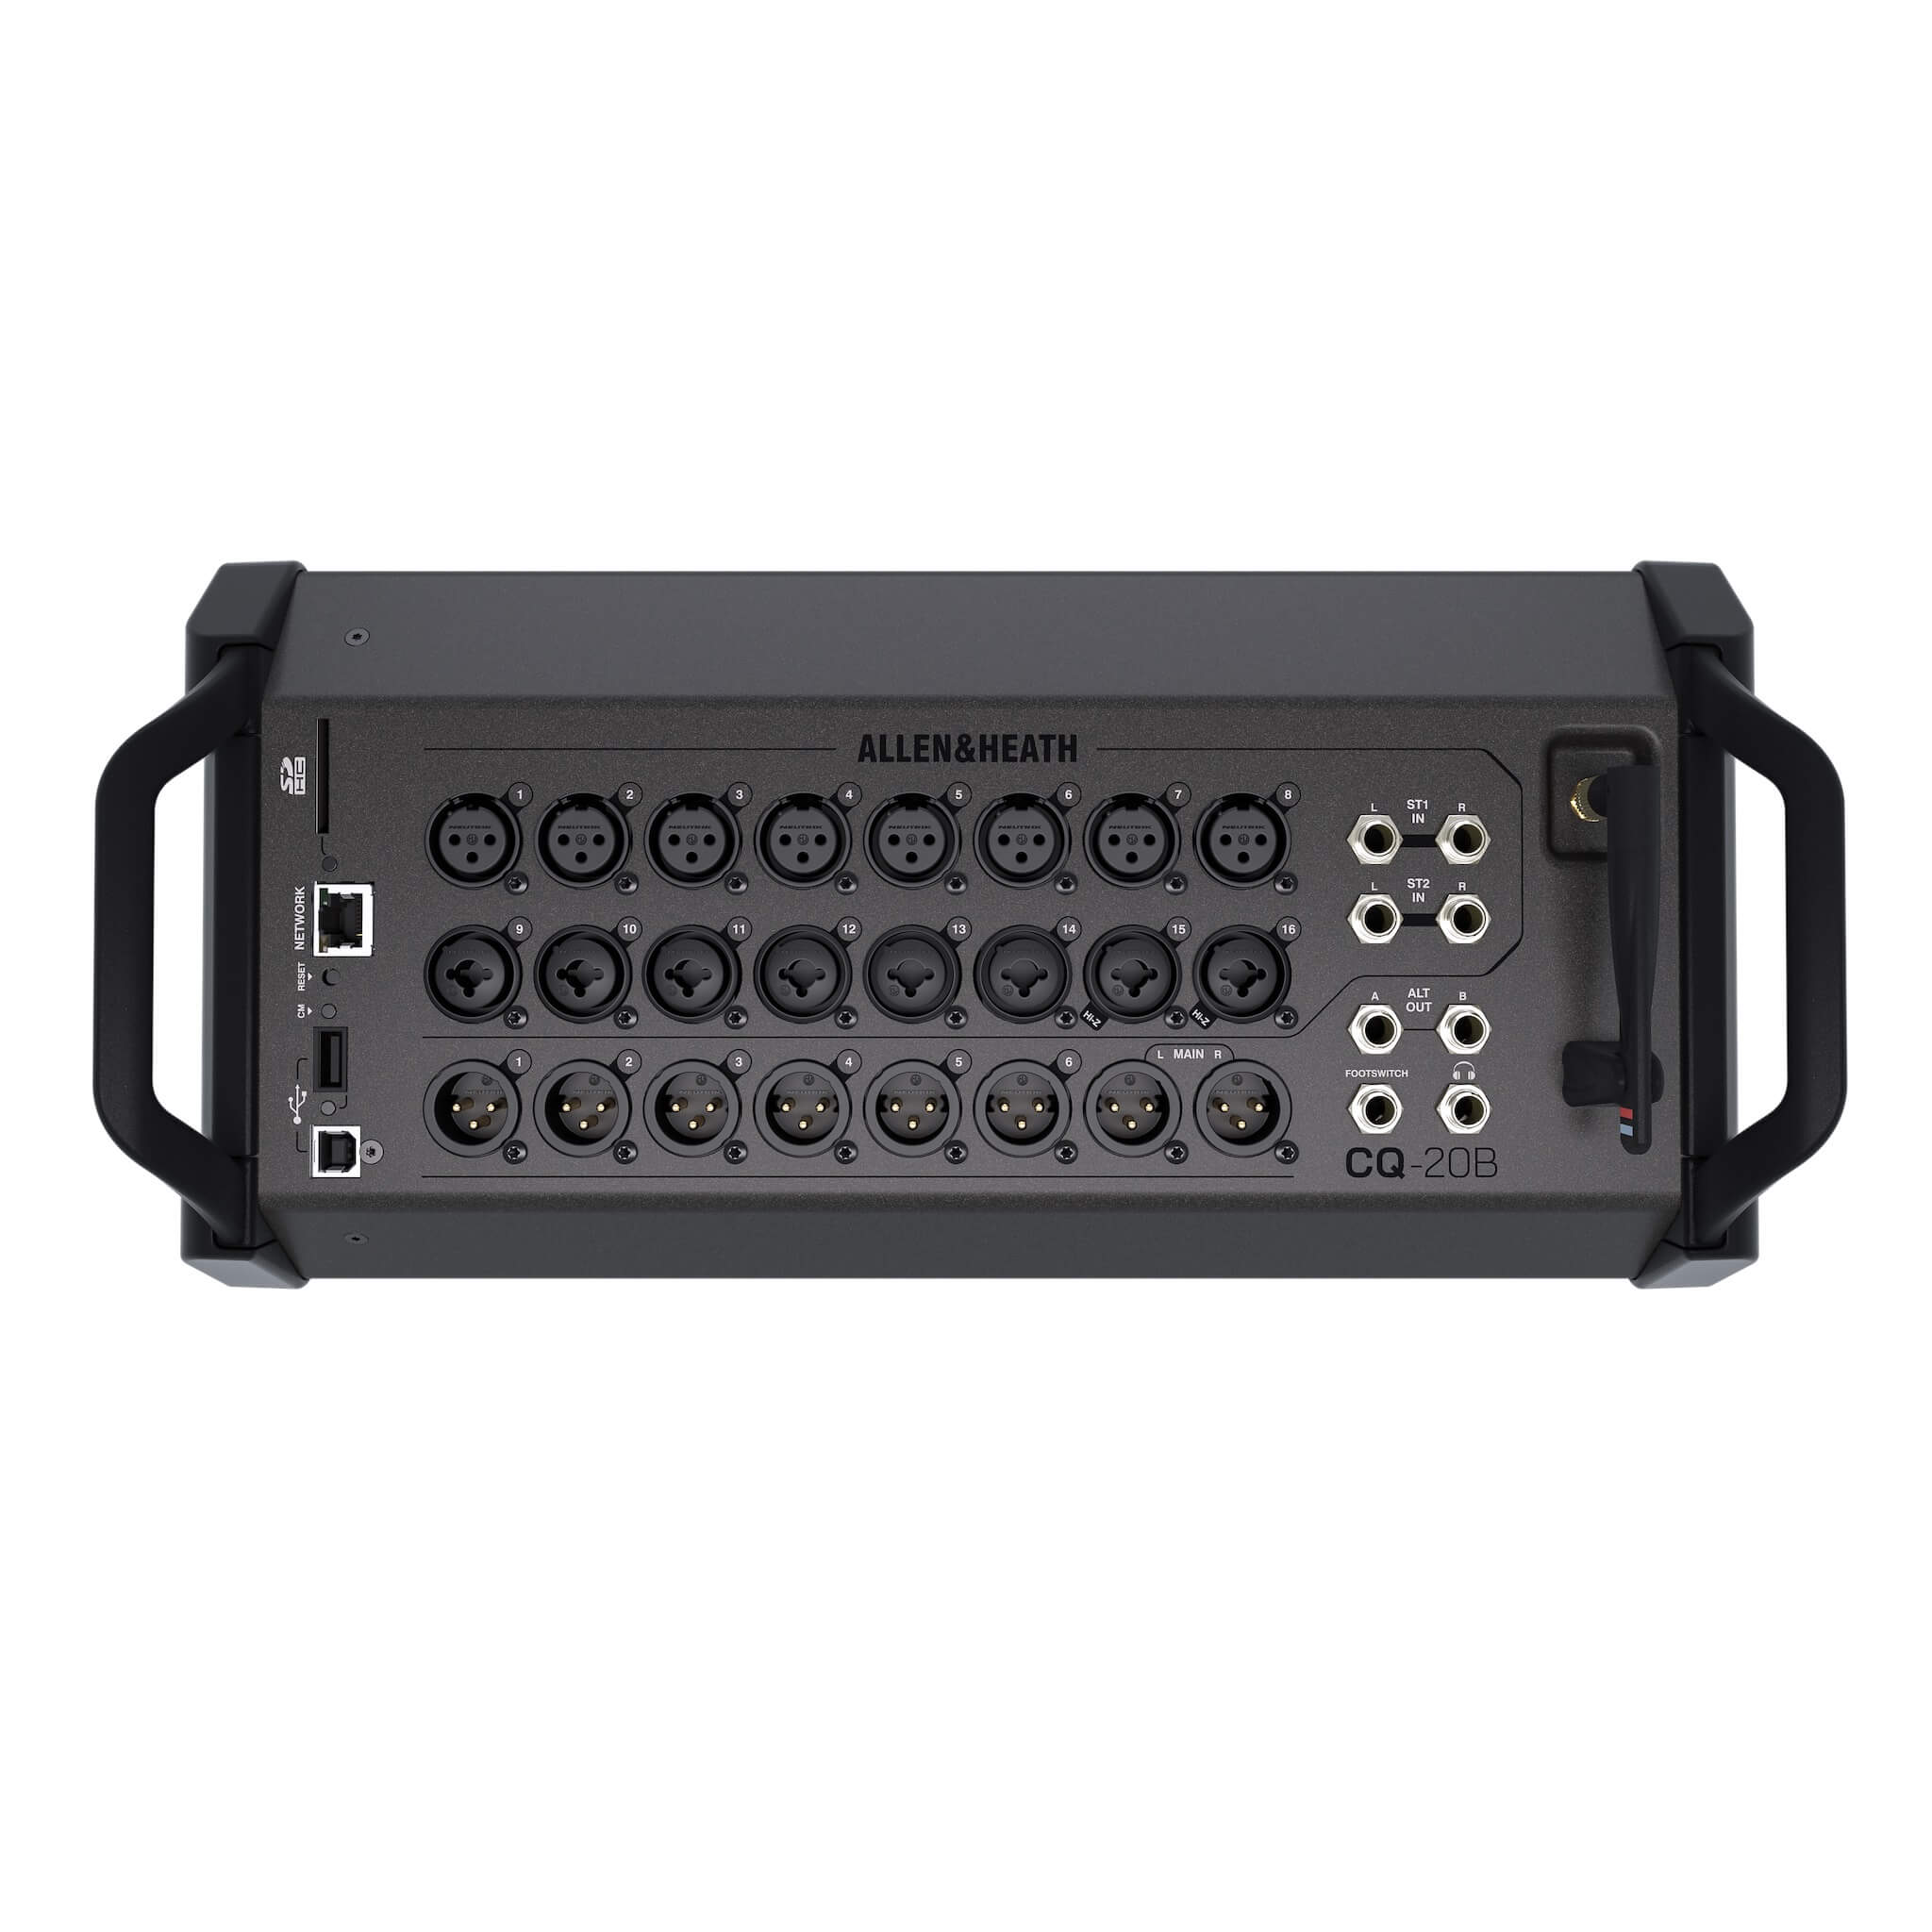 Allen & Heath CQ-20B - Stagebox 16-Channel Digital Mixer with Wi-Fi, top